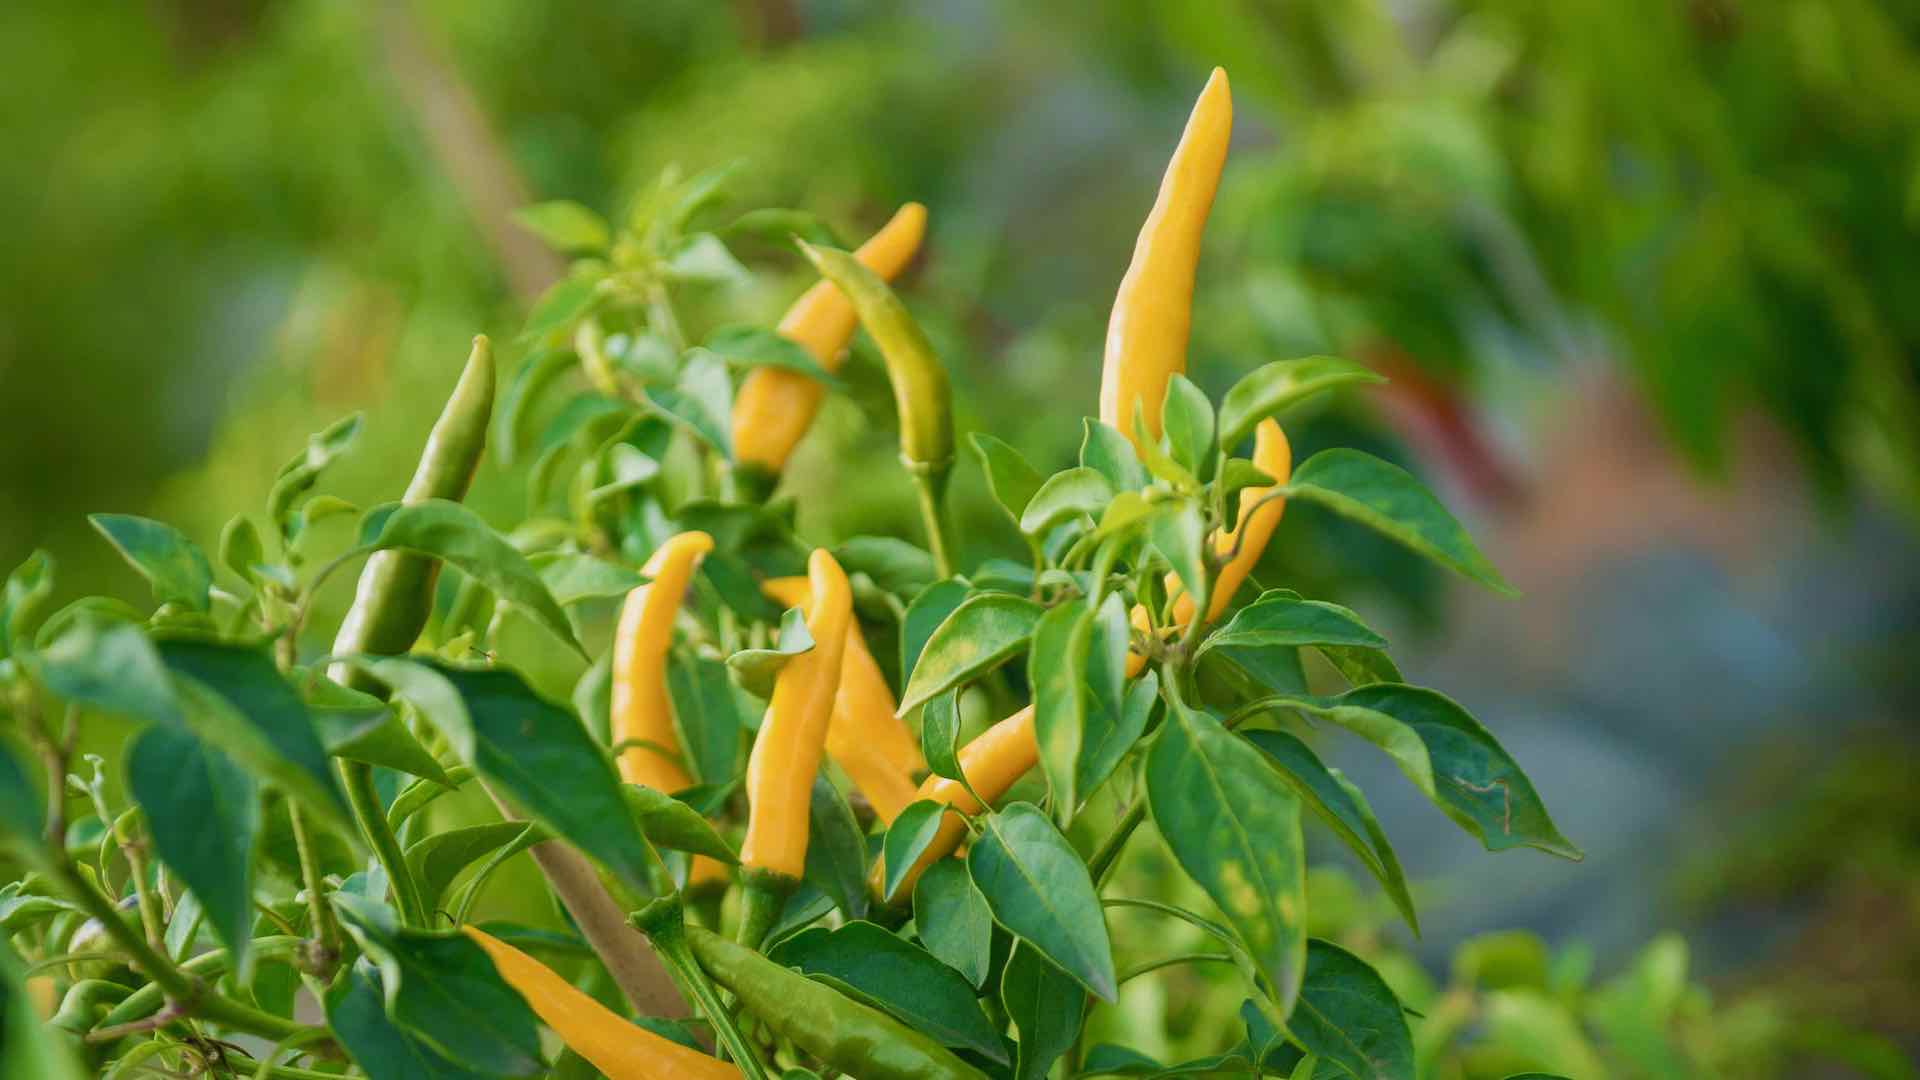 Das Bild zeigt gelbe Chilischoten an einer Pflanze im Freiland